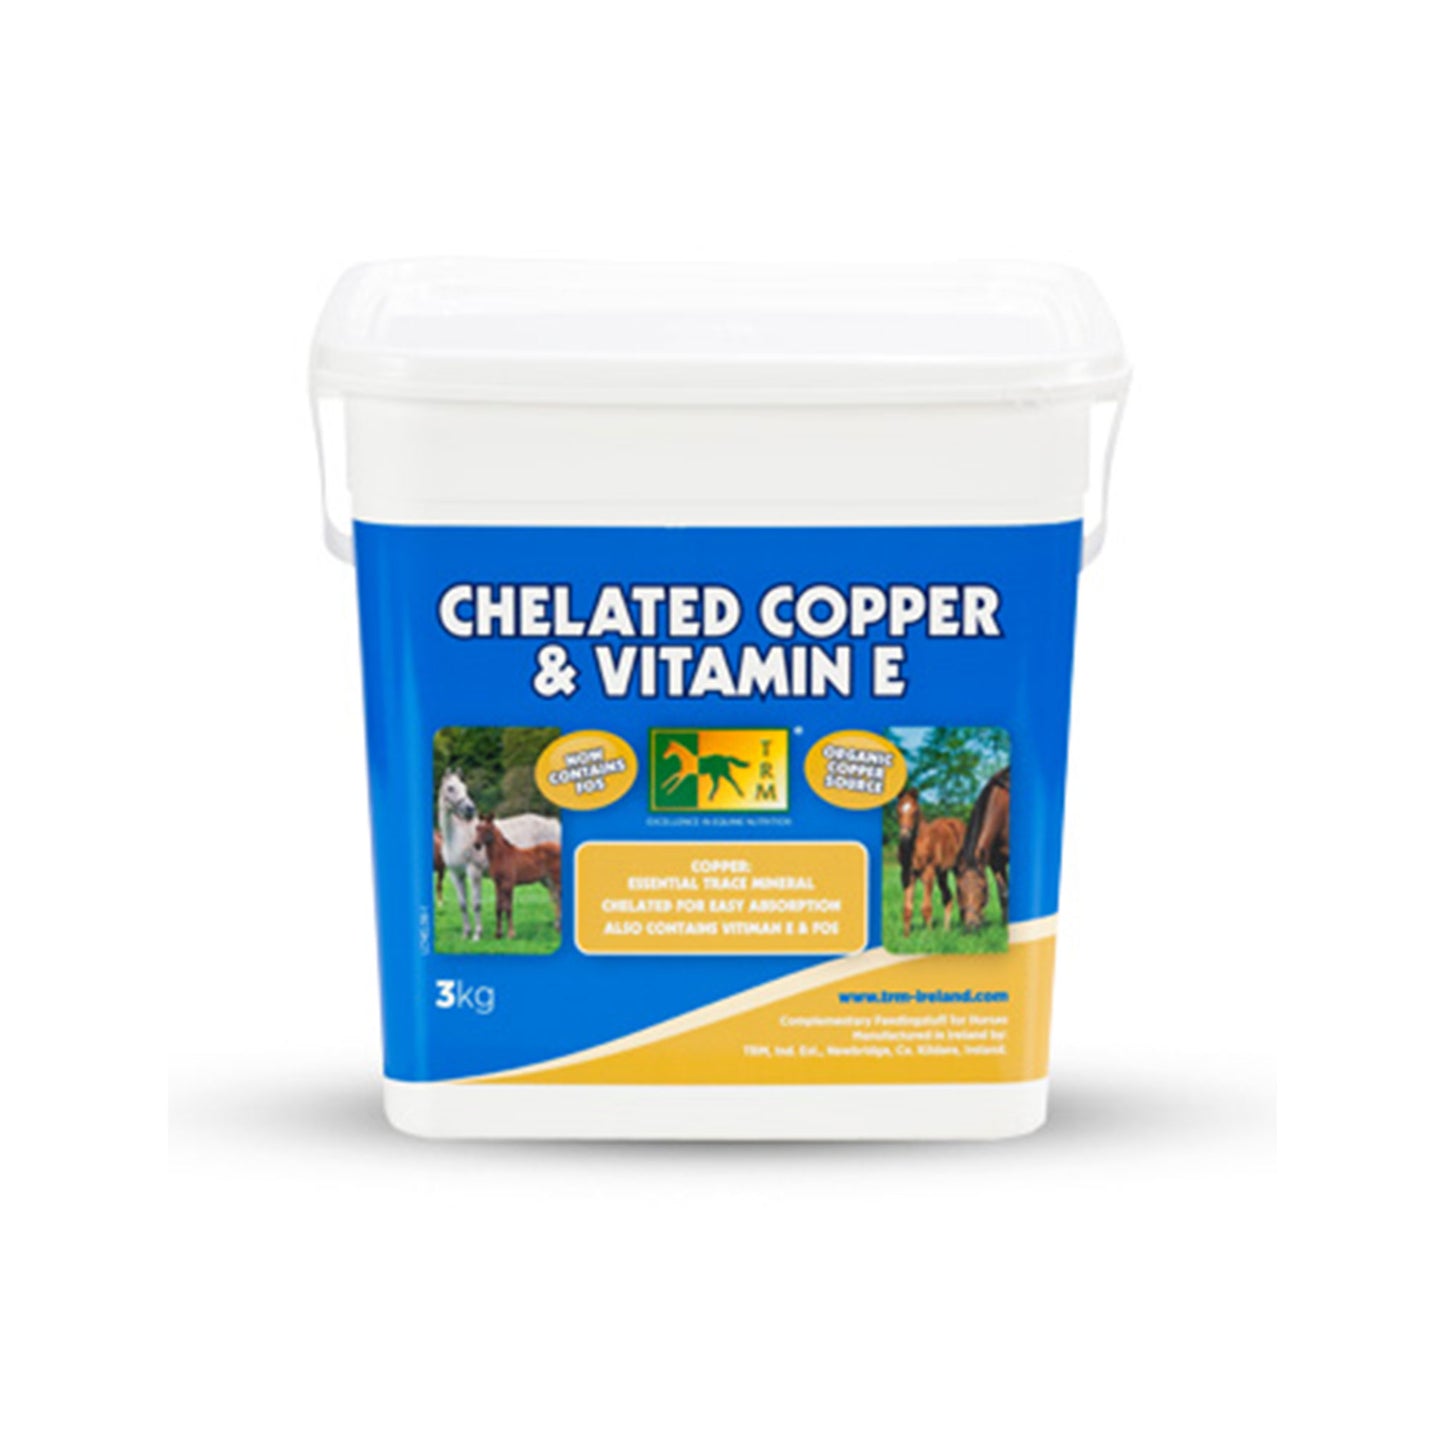 Chelated Copper and Vitamin E